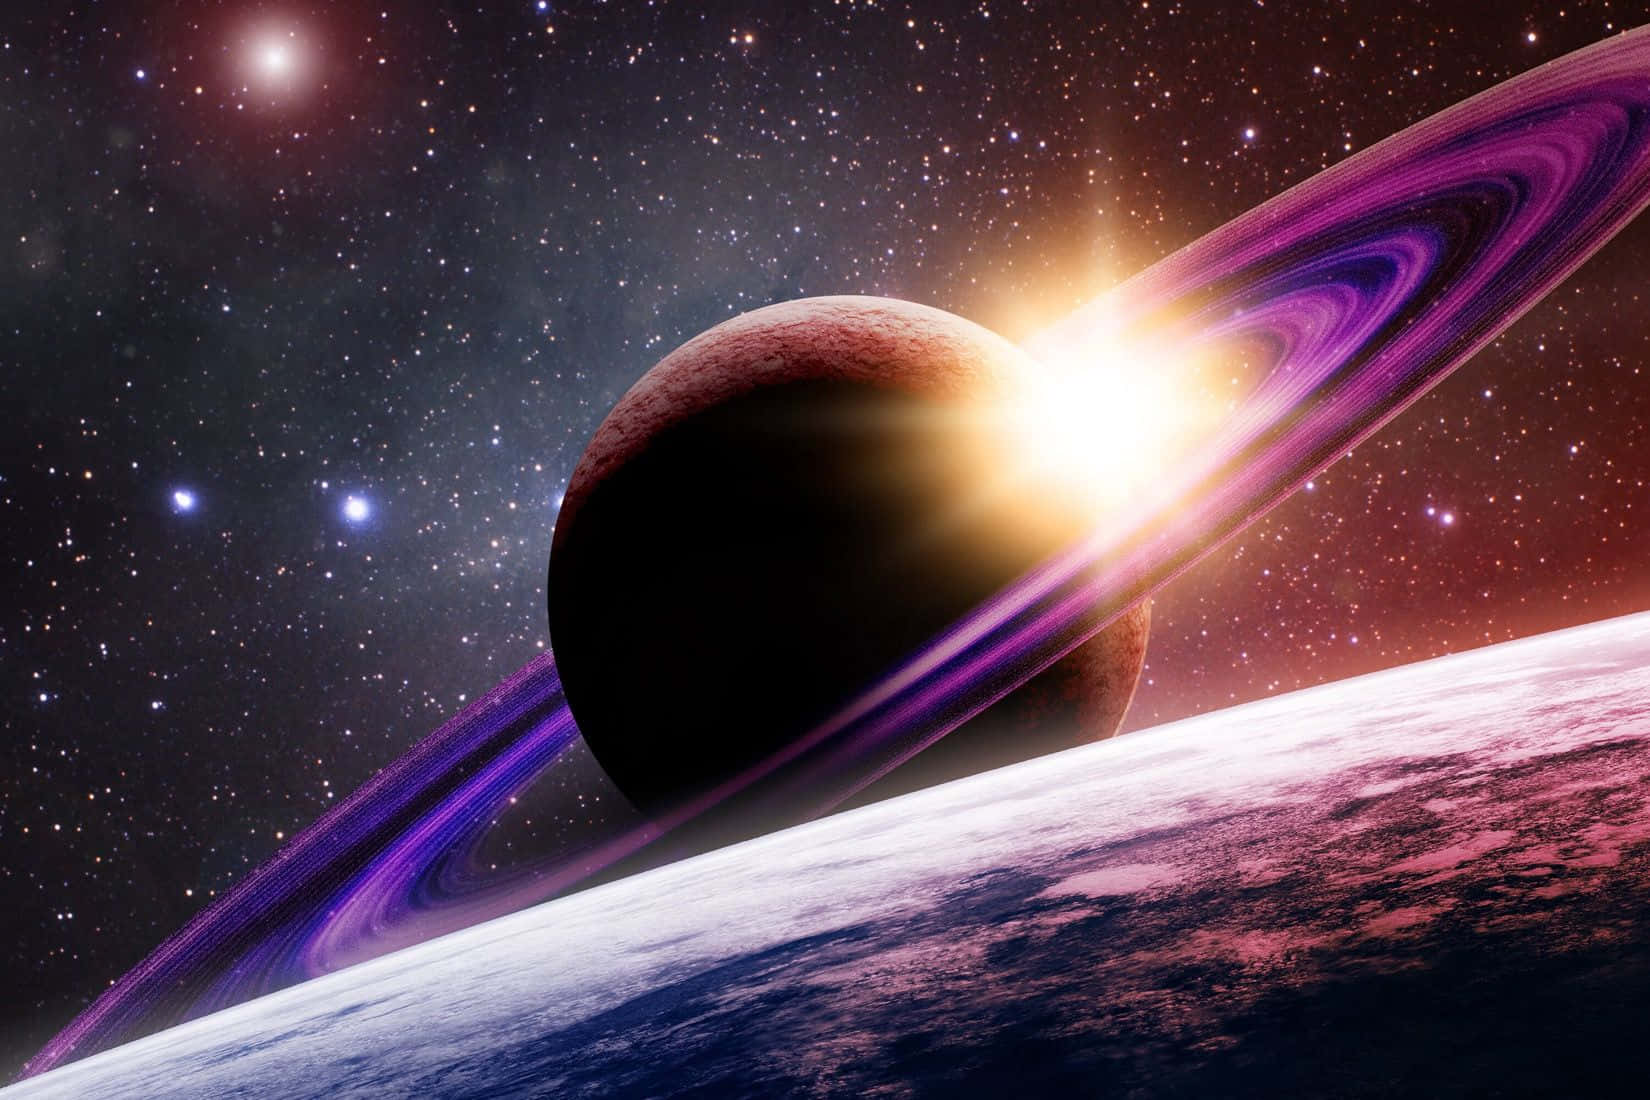 Lamajestuosa Belleza De Saturno